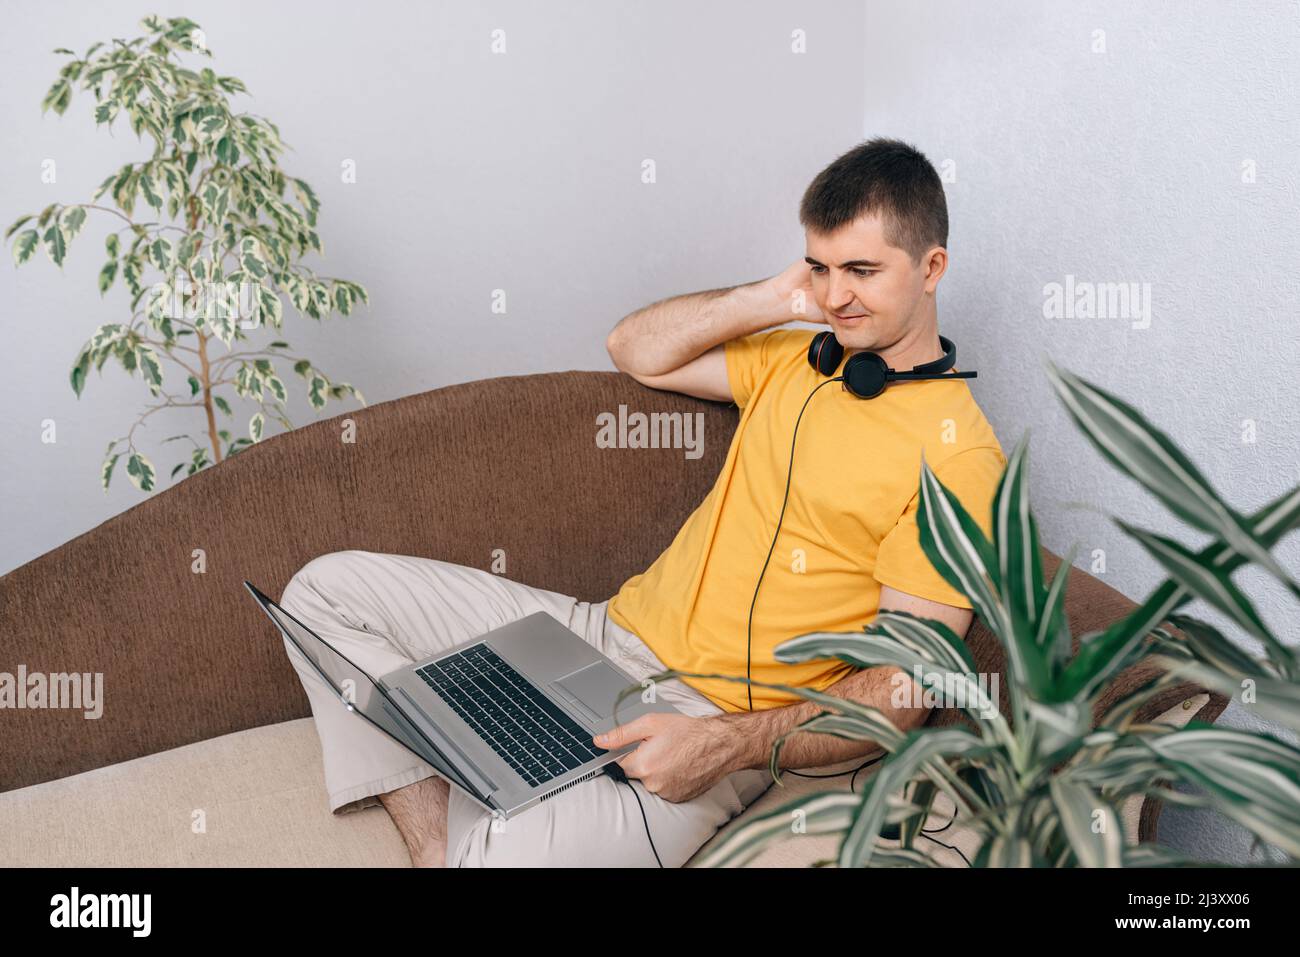 Ein junger lächelnder Mann in einem gelben T-Shirt arbeitet von zu Hause aus auf einem Laptop und kommuniziert online mit dem Kunden. Grüne Pflanzen im Zimmer. Konzept der Online-Bildung und Hausaufgaben, freiberuflich. Stockfoto